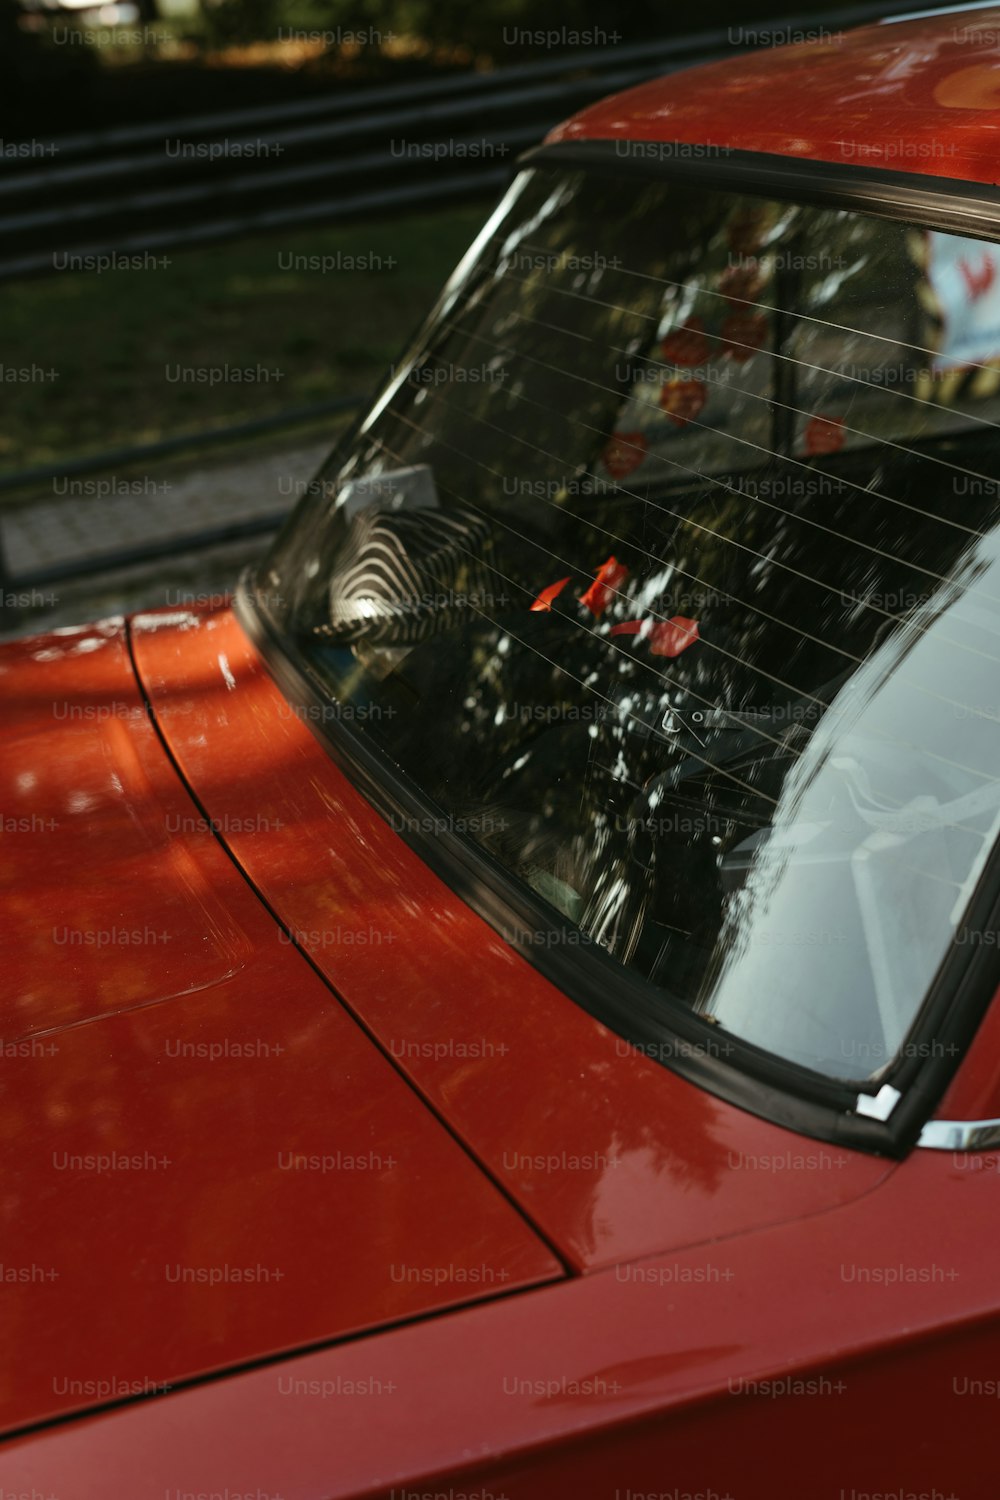 a close up of a red car with a bird on it's windshield